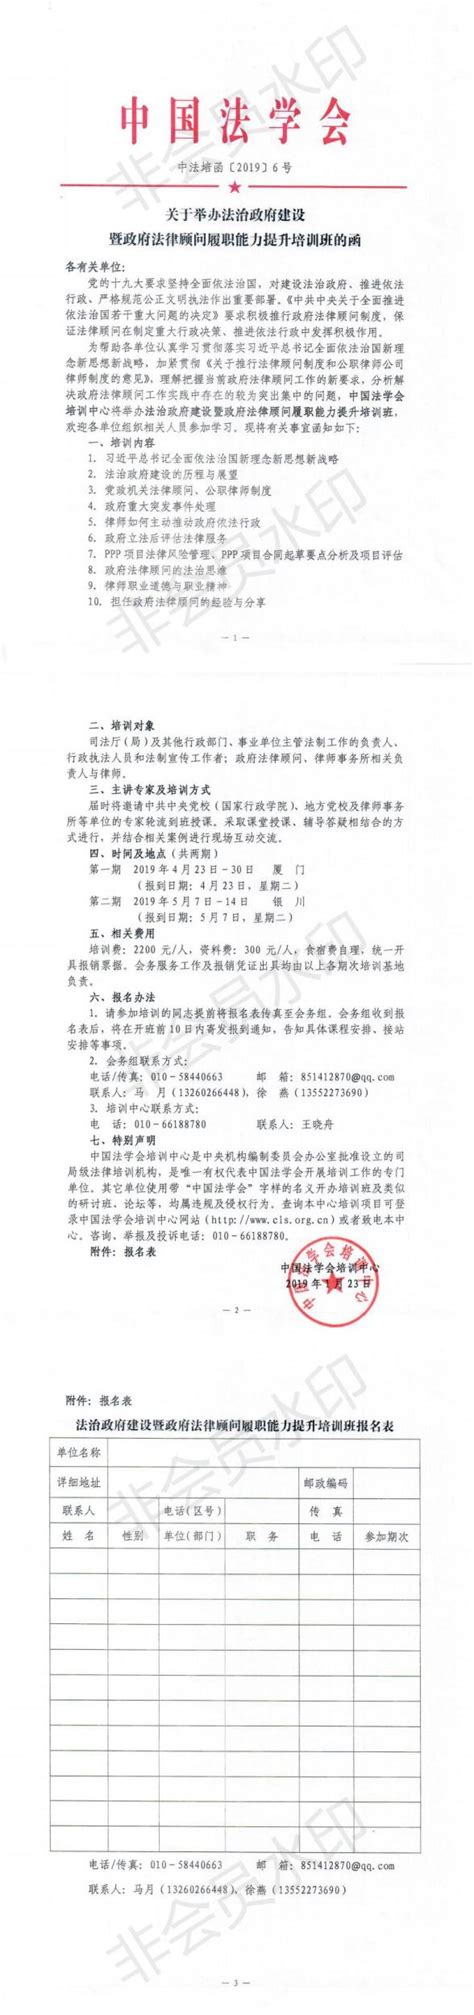 萍乡市政府常务会议记录纪要(68)-萍乡频道-中国江西网首页